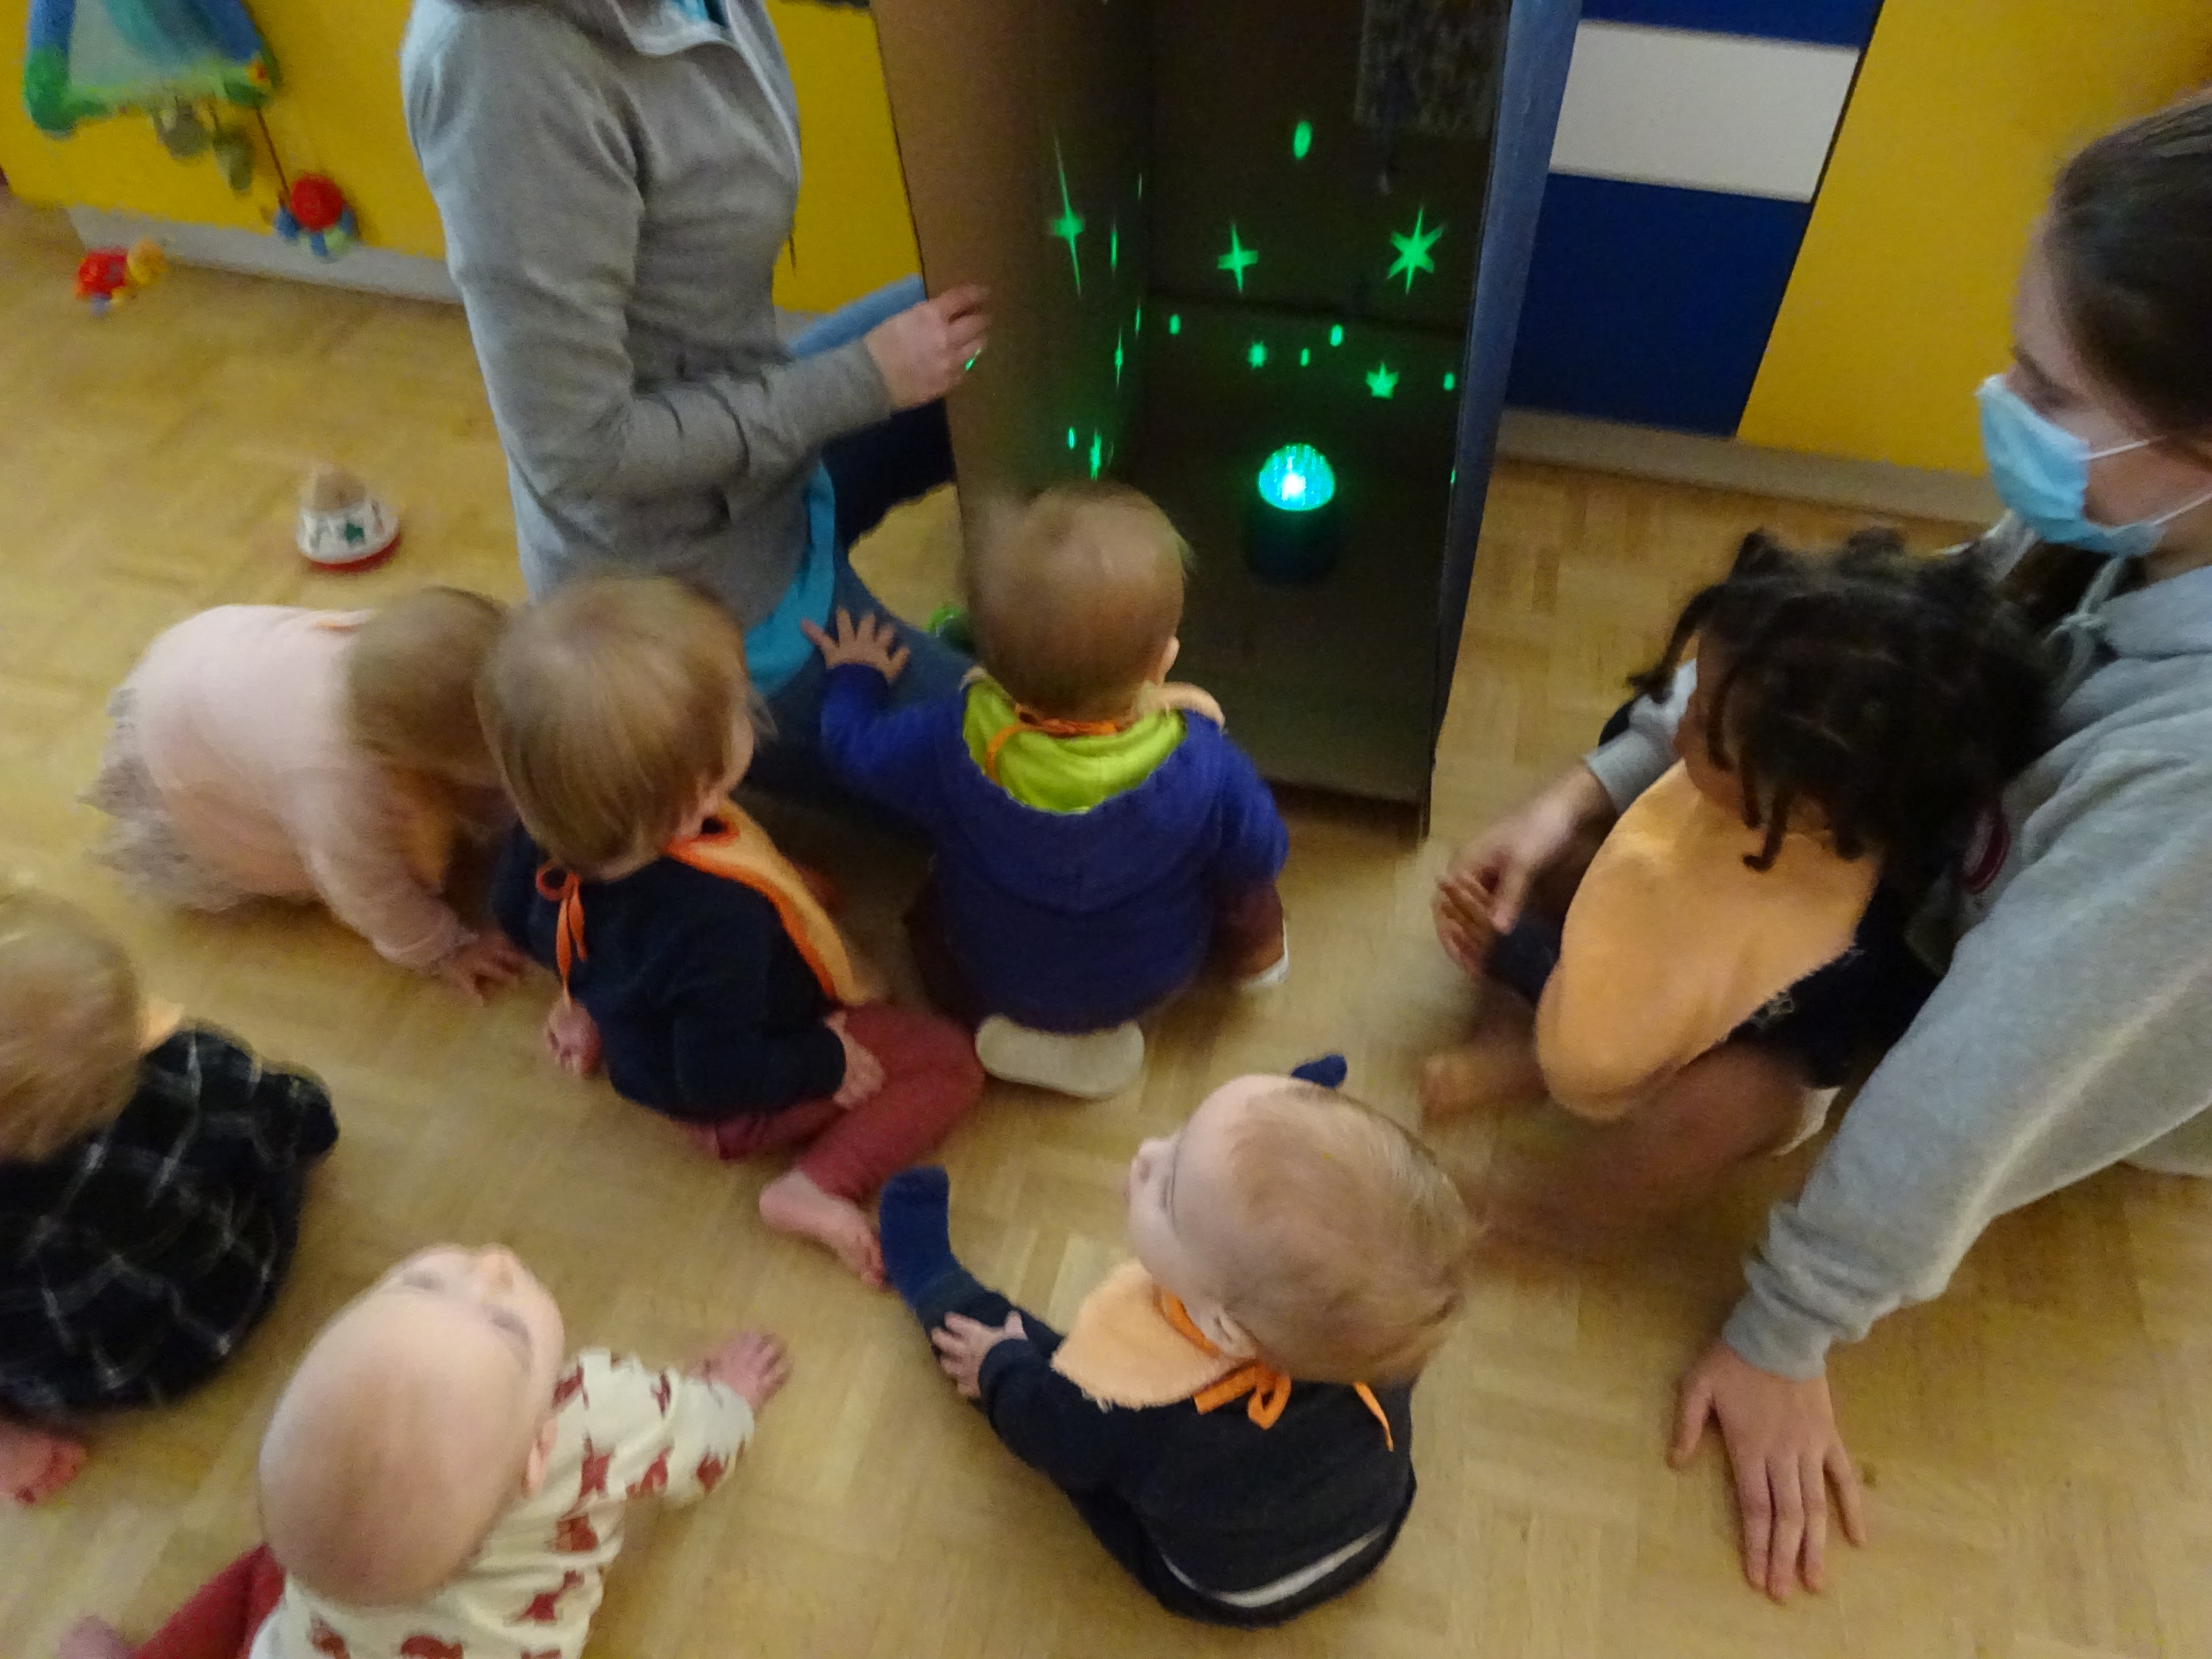 week van de kinderopvang; Toekomstmakers Glow in the dark ruimte kijkdoos bij de baby's